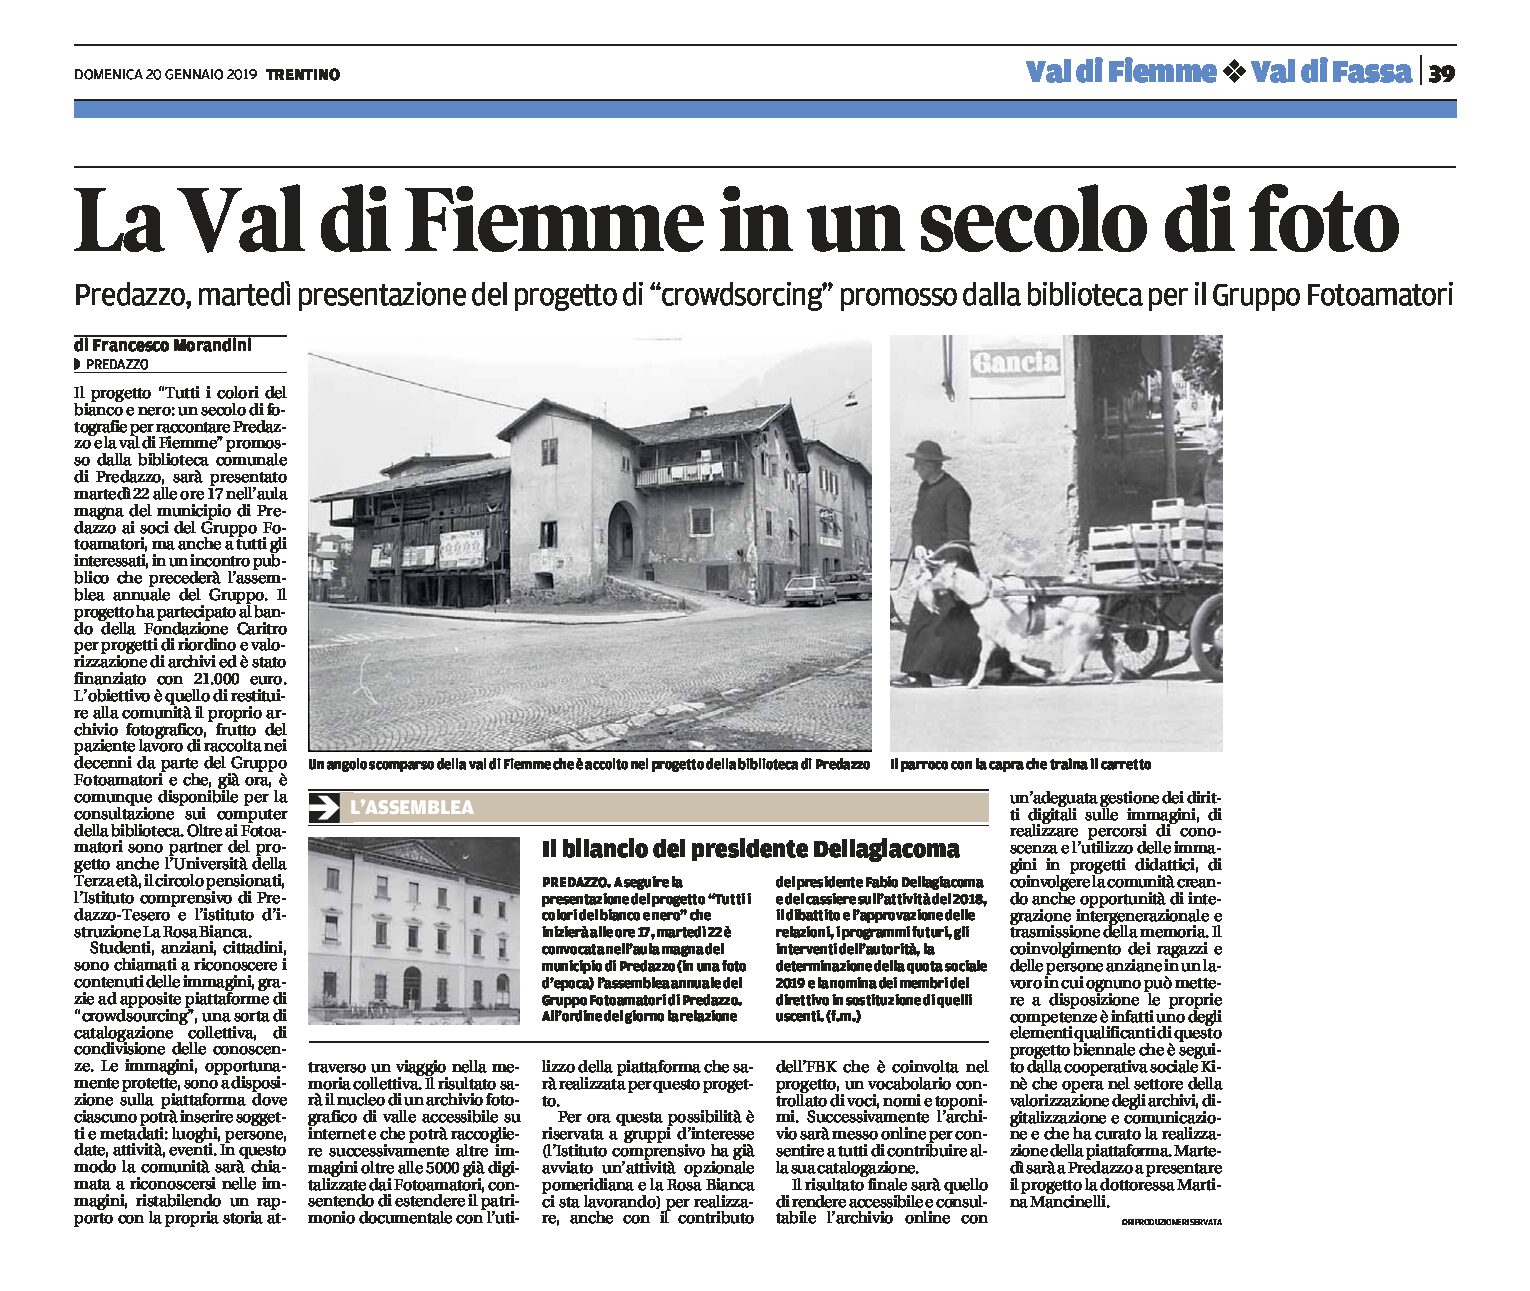 Predazzo e Val di Fiemme: in un secolo di fotografie in bianco e nero. Progetto di crowdsourcing